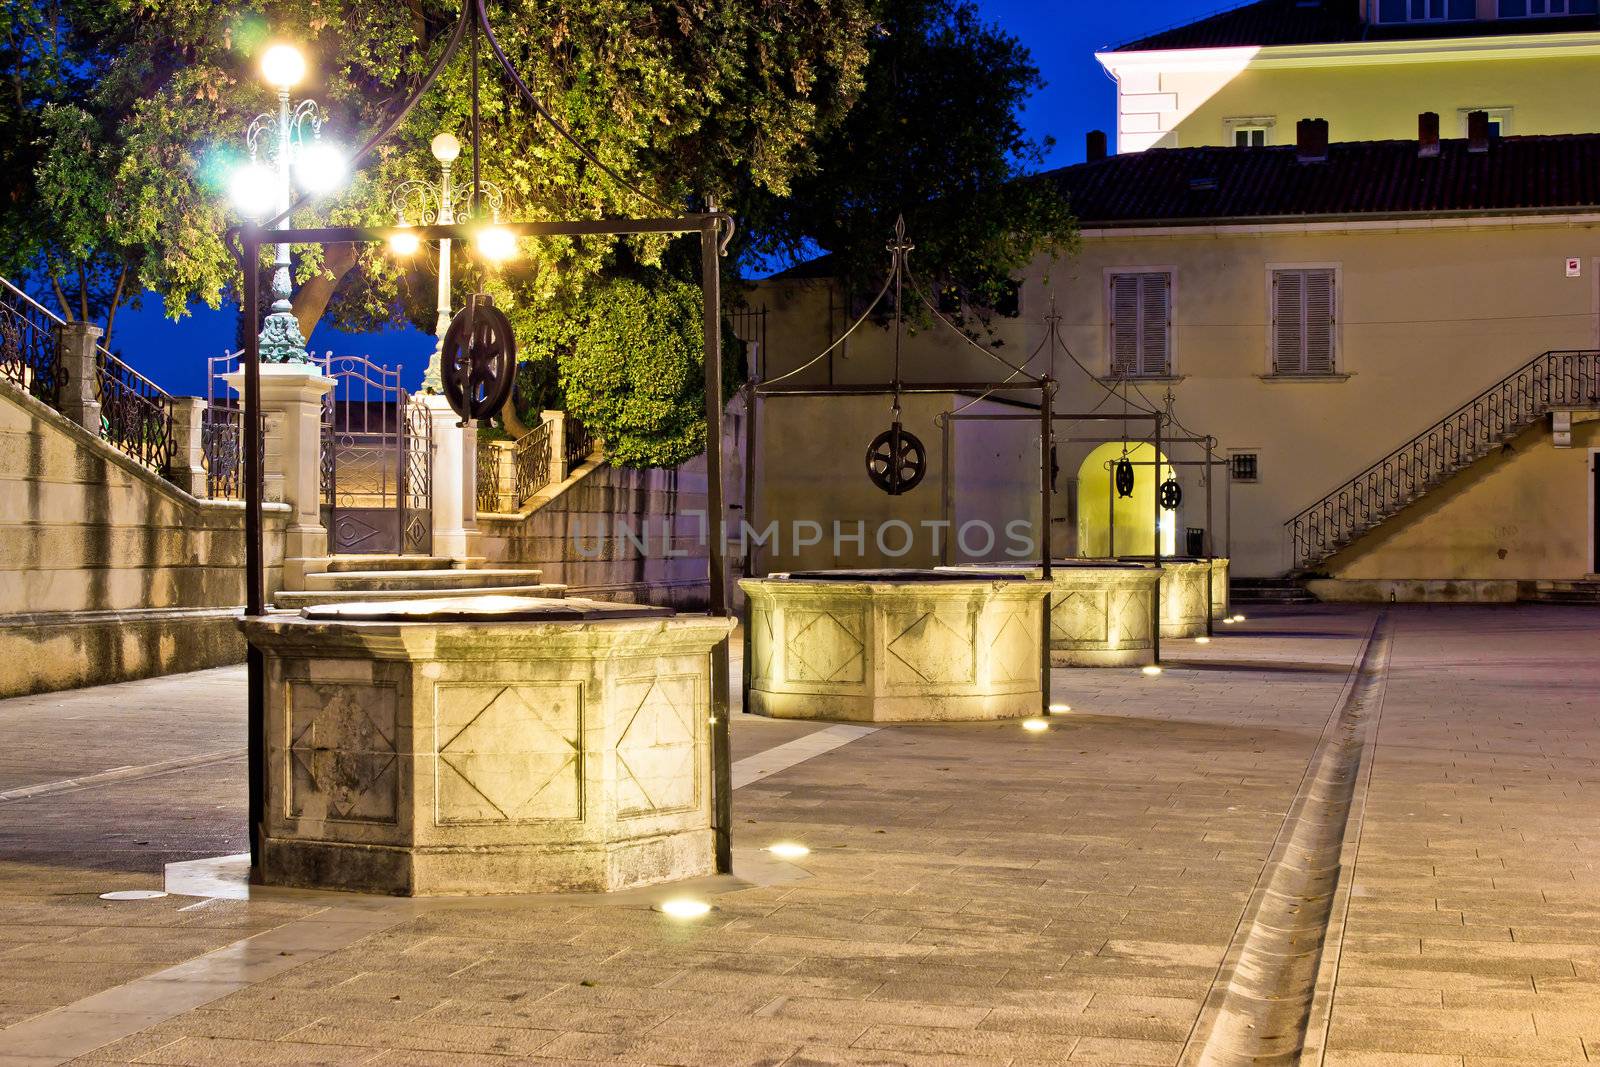 Five wells square in Zadar night view, Dalmatia, Croatia